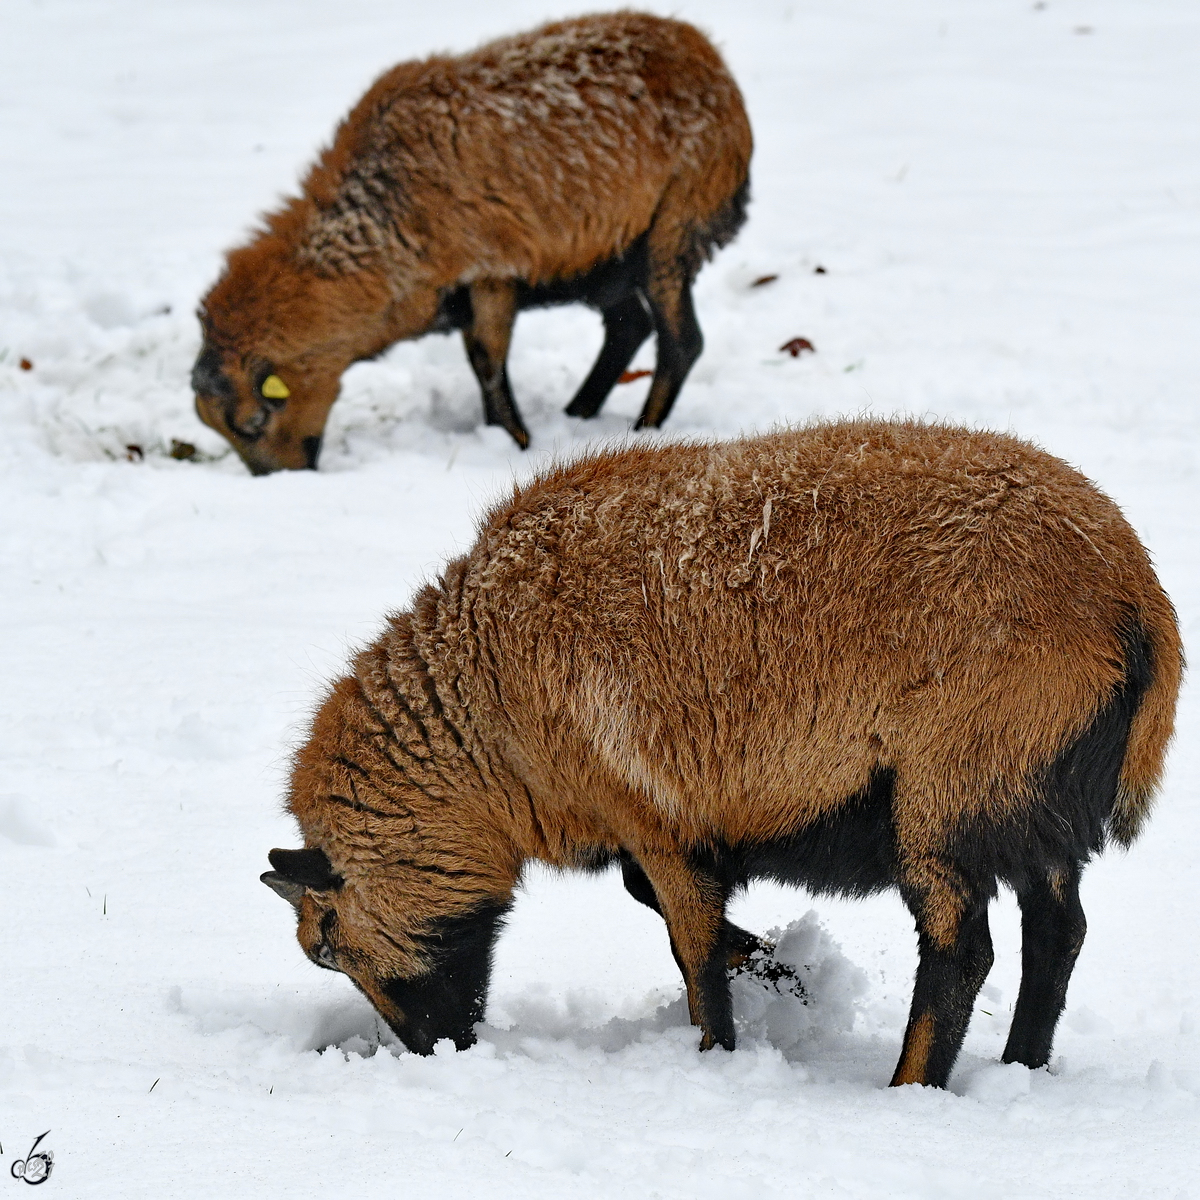 Schafe beim Schaben und Grasen im Schnee. (Hattingen, Februar 2021)